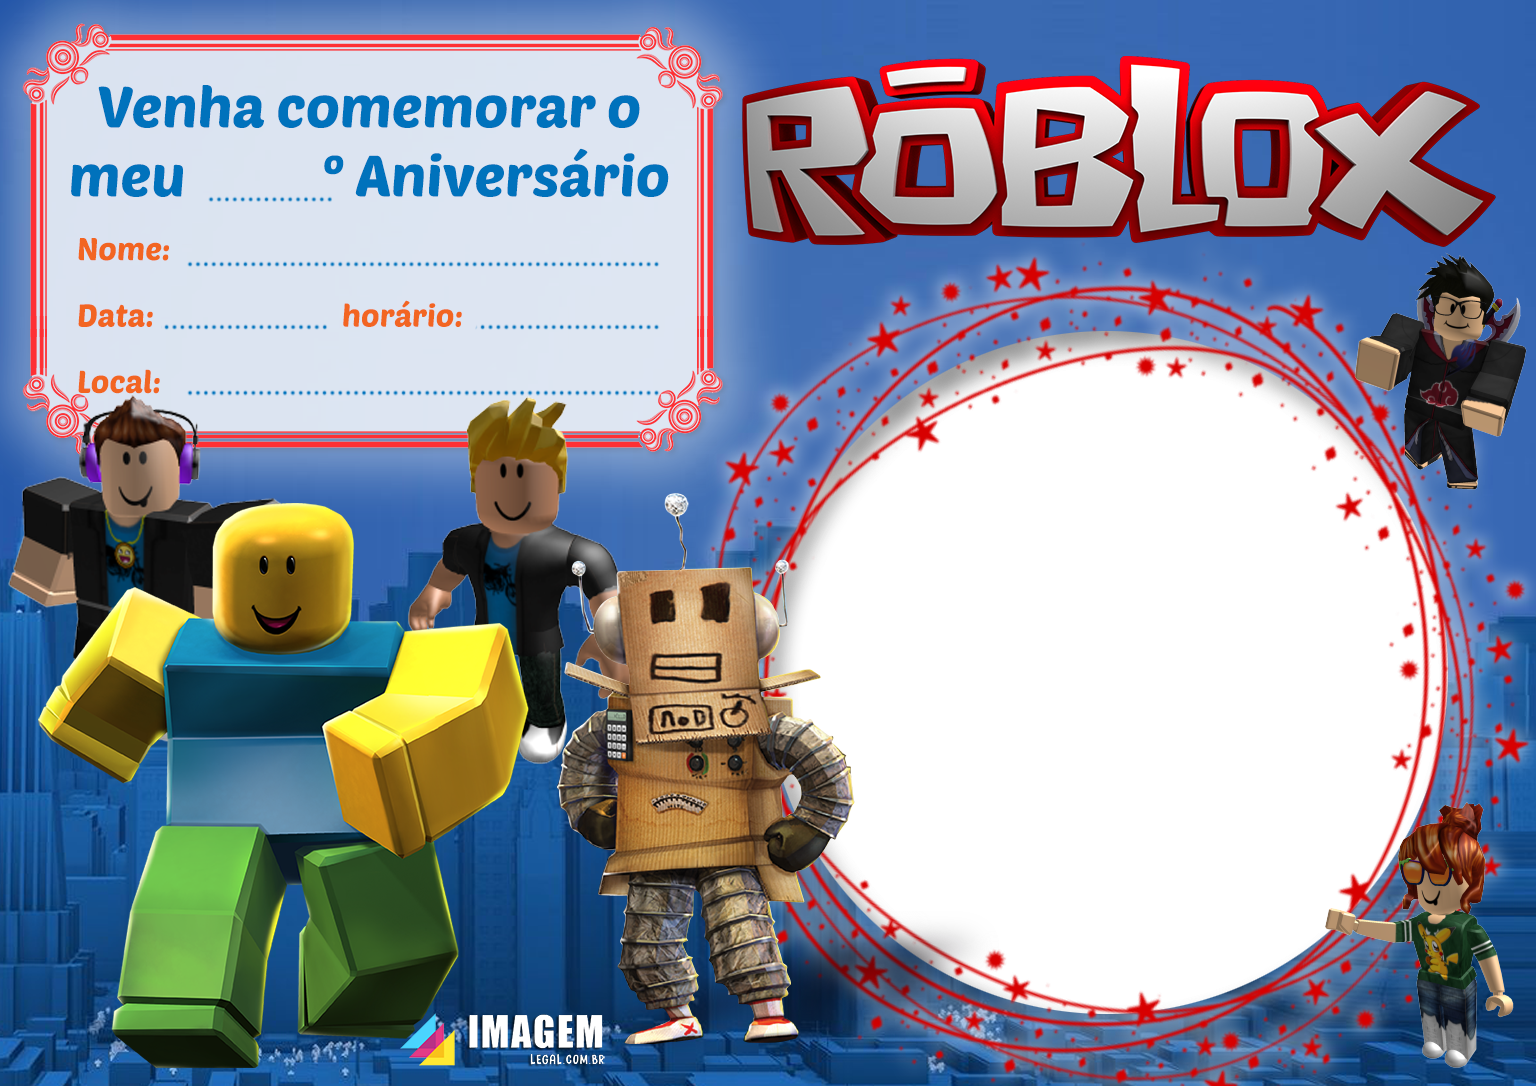 Convite de Aniversário Roblox - Imagem Legal